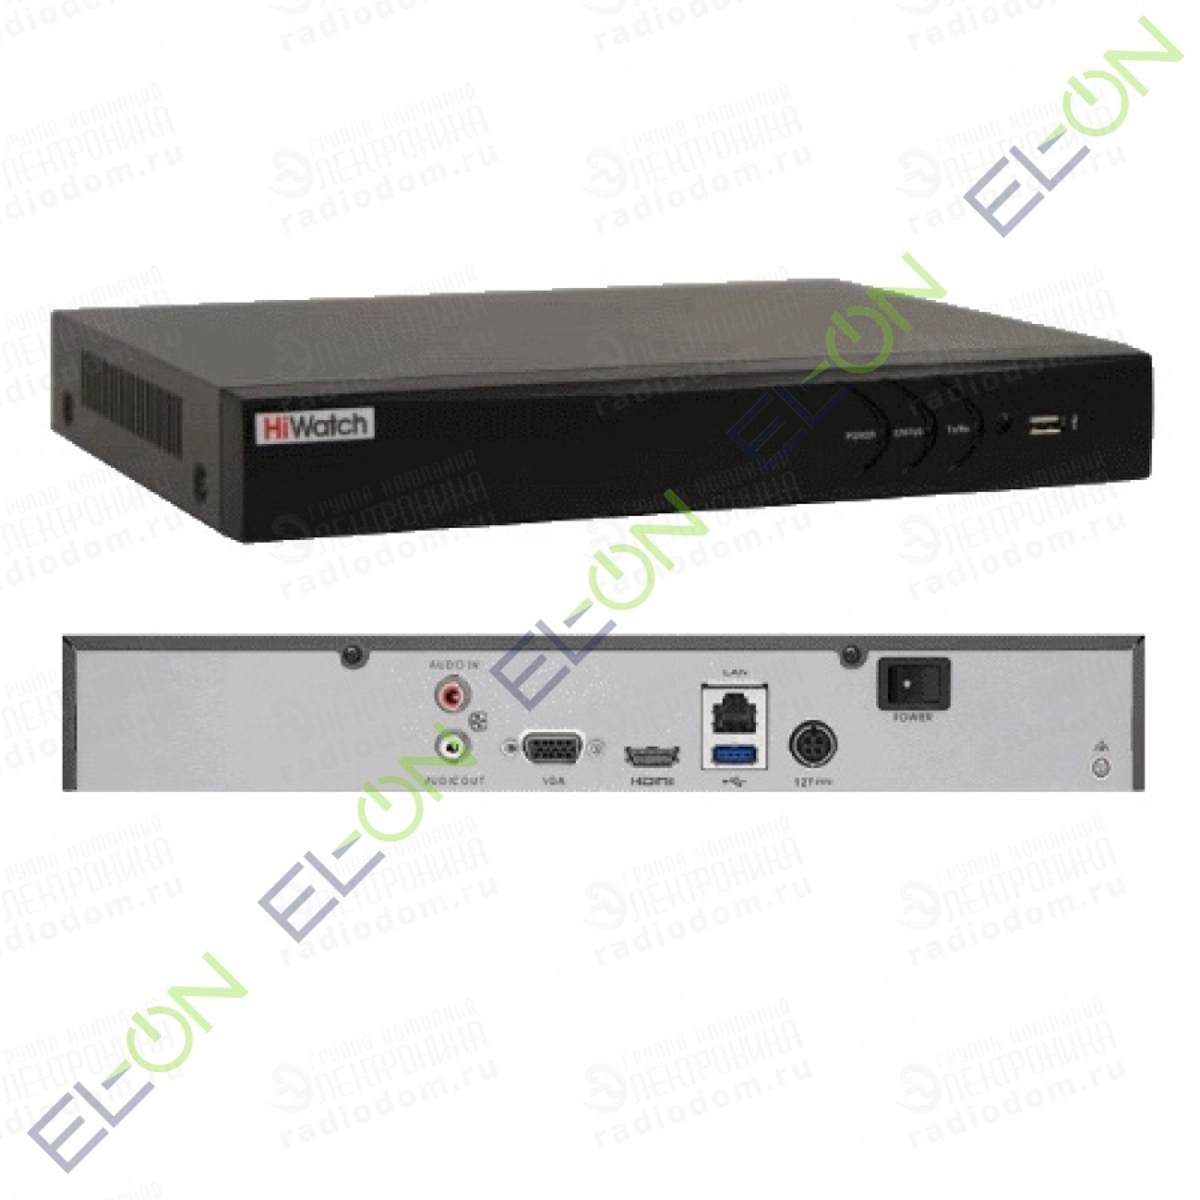 Видеорегистратор 16 ти канальный. HIWATCH DS-n316(с). DS-n316(c) IP-видеорегистратор HIWATCH. DS-n316/2. DS-n308(b).